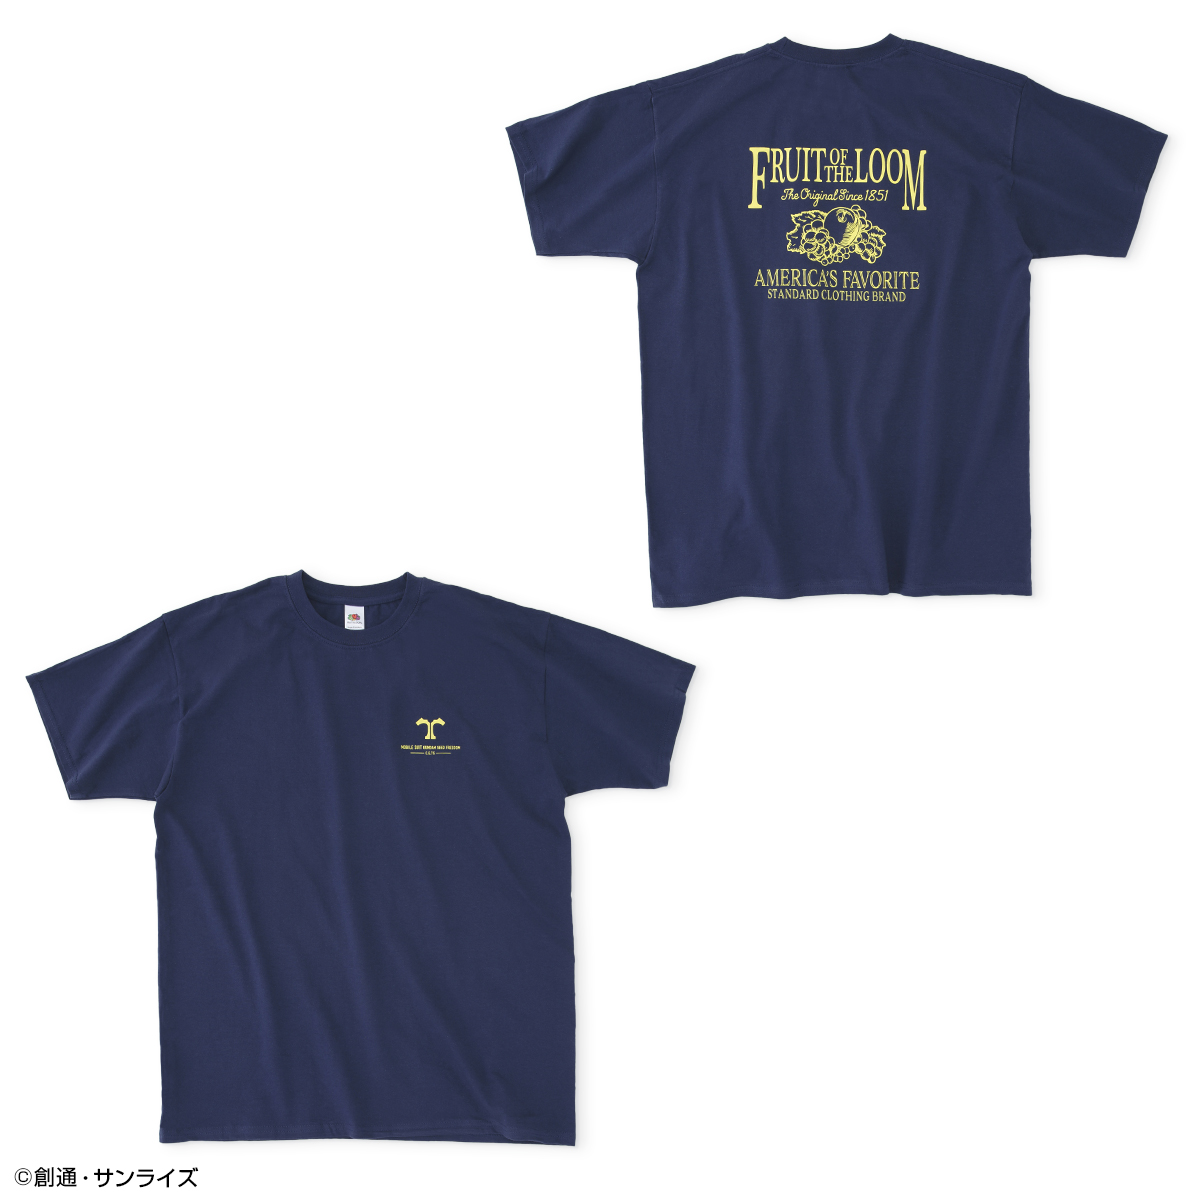 劇場版『機動戦士ガンダムSEED FREEDOM』公開記念コラボ企画、「FRUIT OF THE LOOM」Tシャツ &「NEW ERA(R)」キャップが登場!